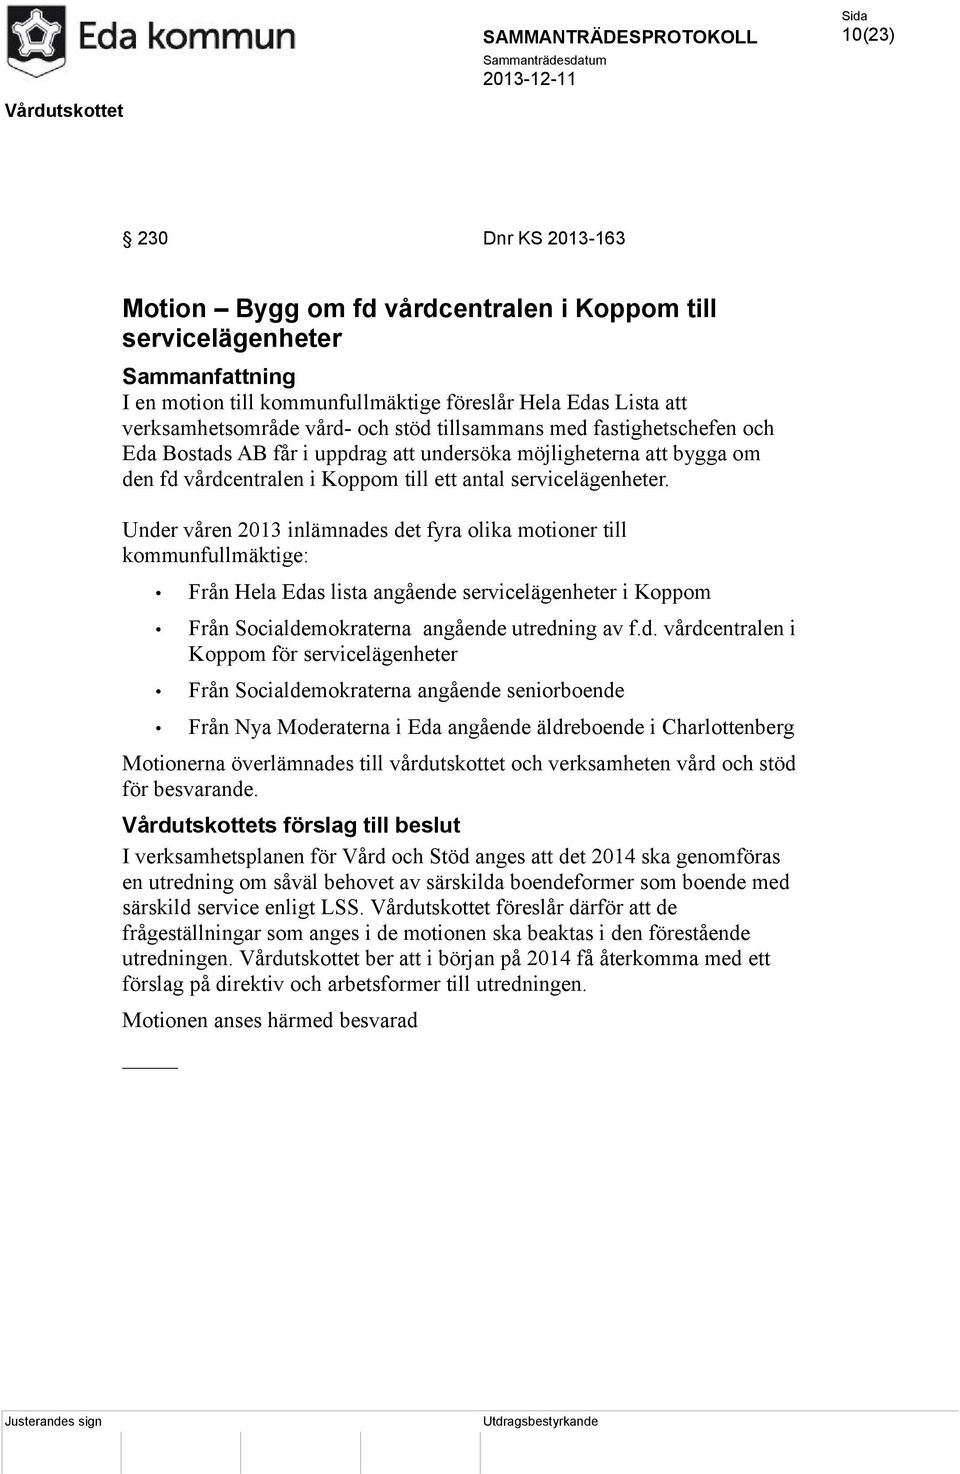 Under våren 2013 inlämnades det fyra olika motioner till kommunfullmäktige: Från Hela Edas lista angående servicelägenheter i Koppom Från Socialdemokraterna angående utredning av f.d. vårdcentralen i